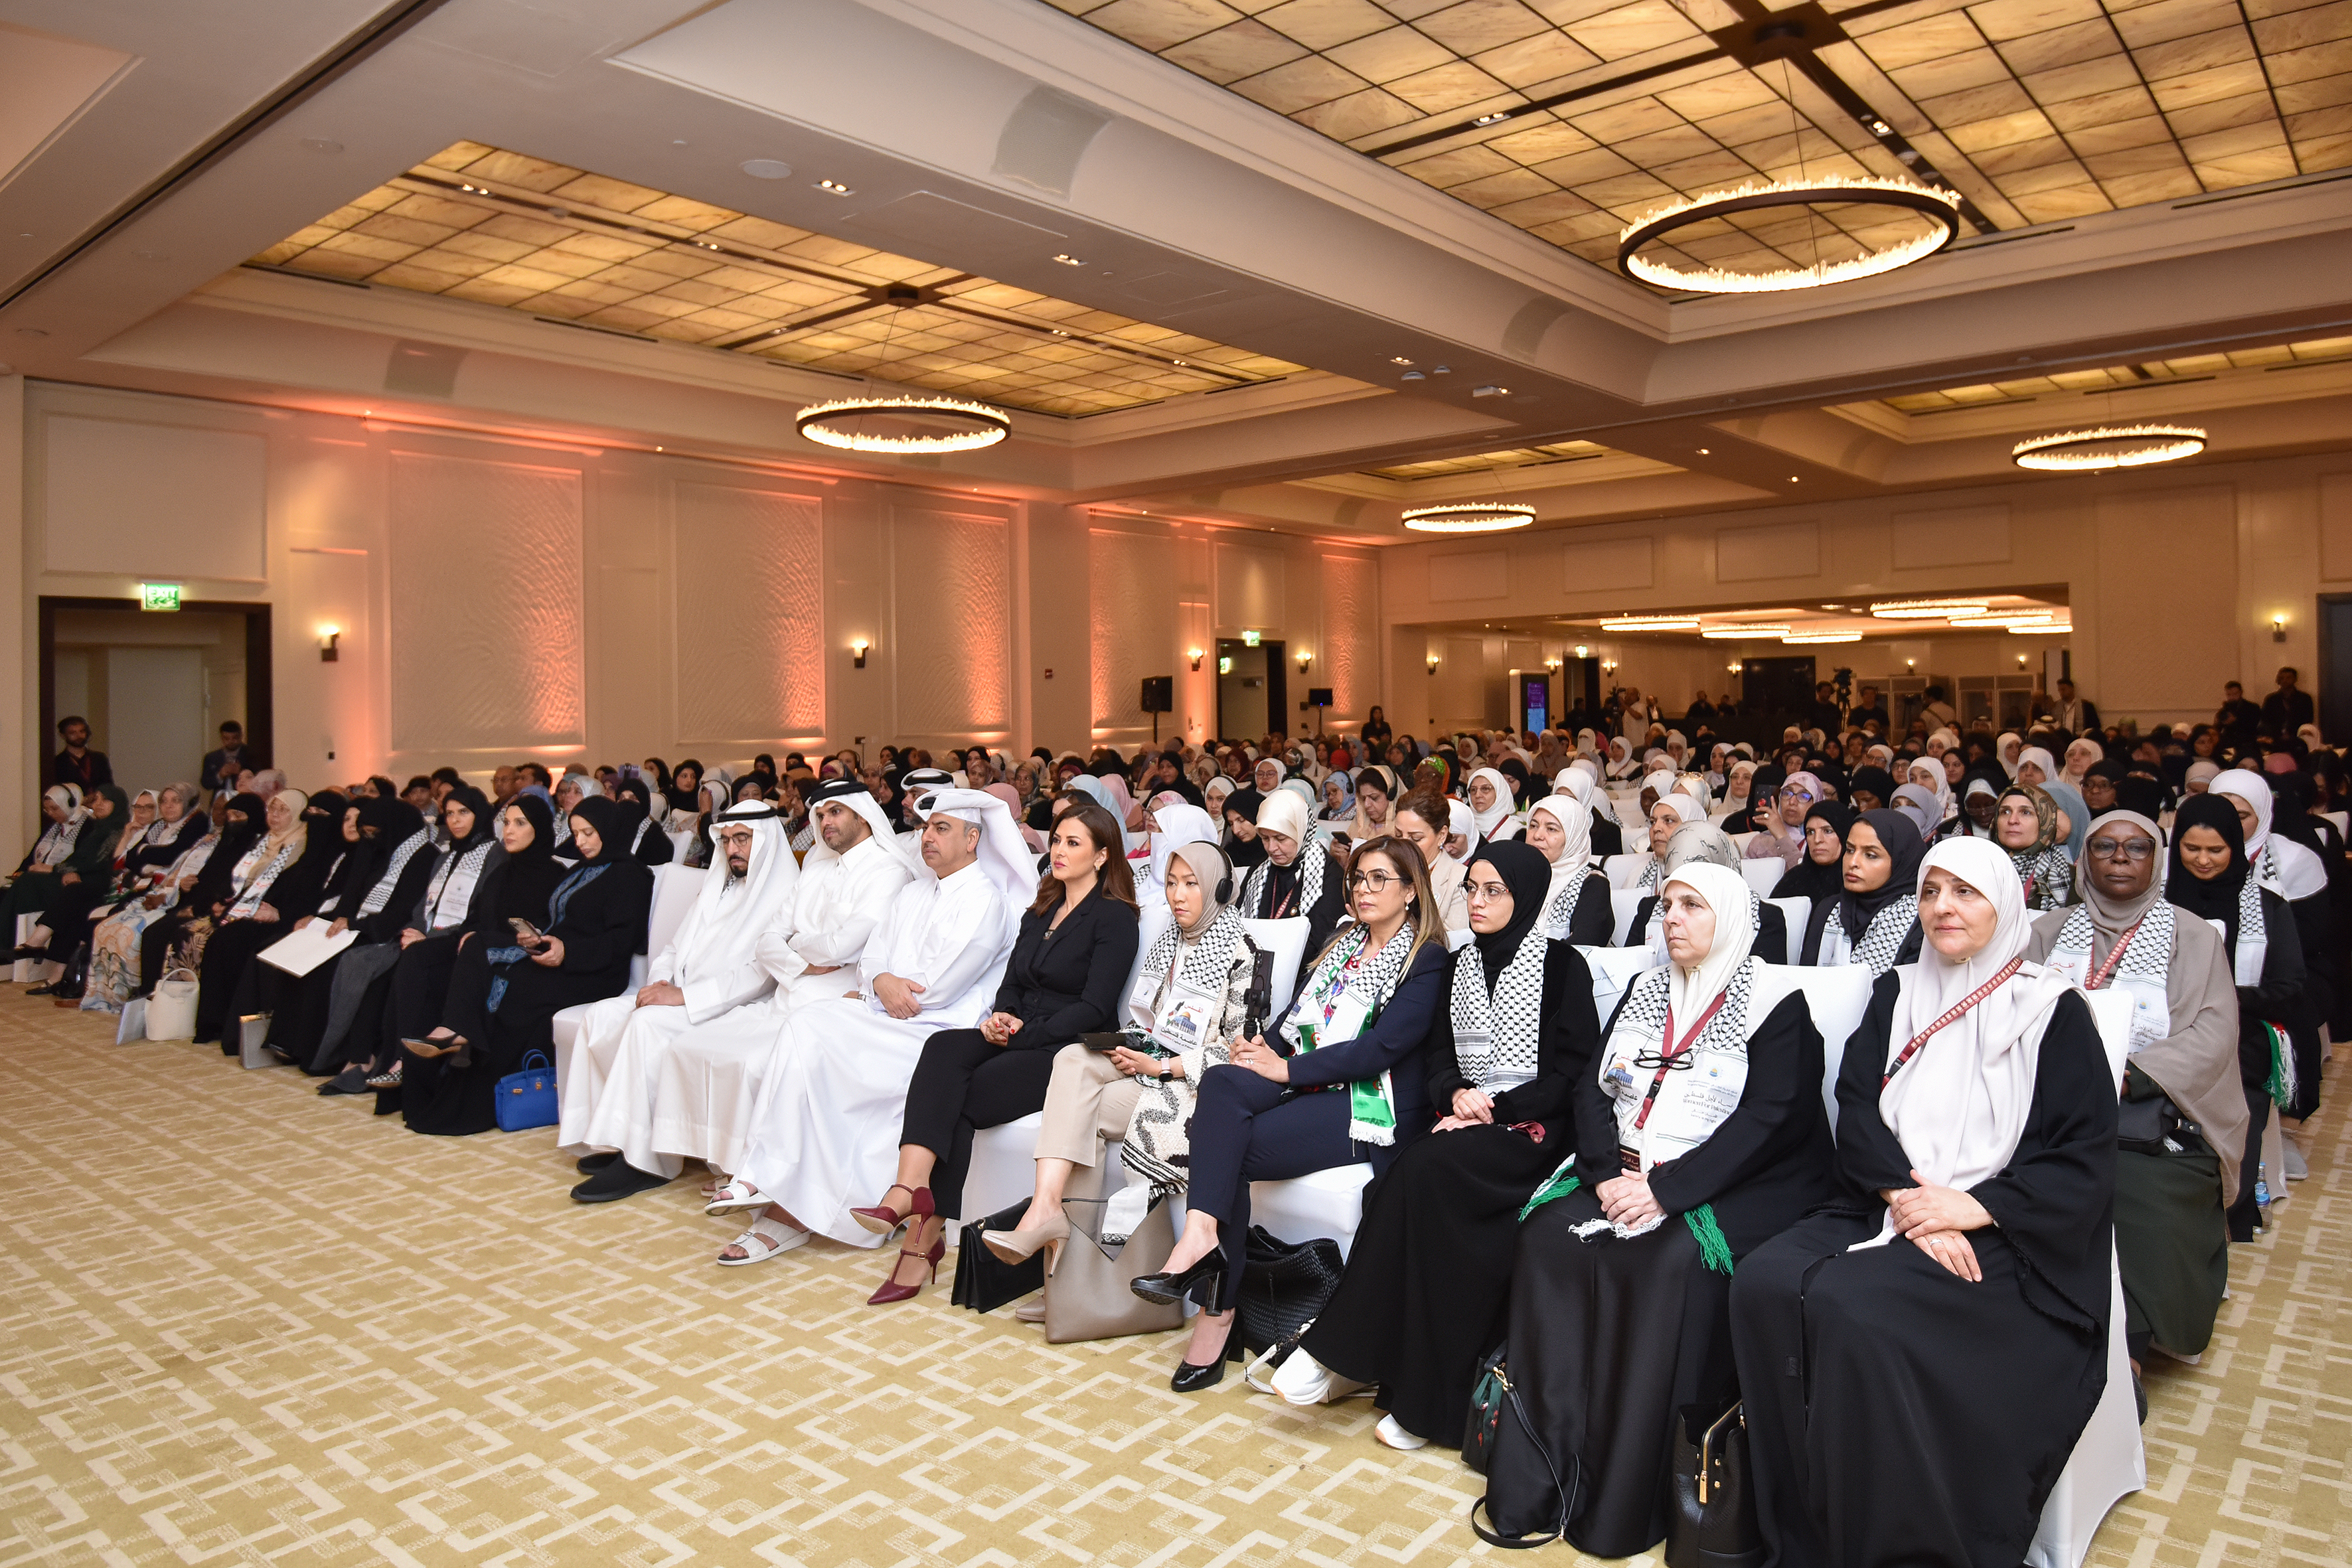 انعقاد مؤتمر القيادات النسائية الدولي لدعم المرأة والطفل الفلسطيني "الأمان حقي" في قطر